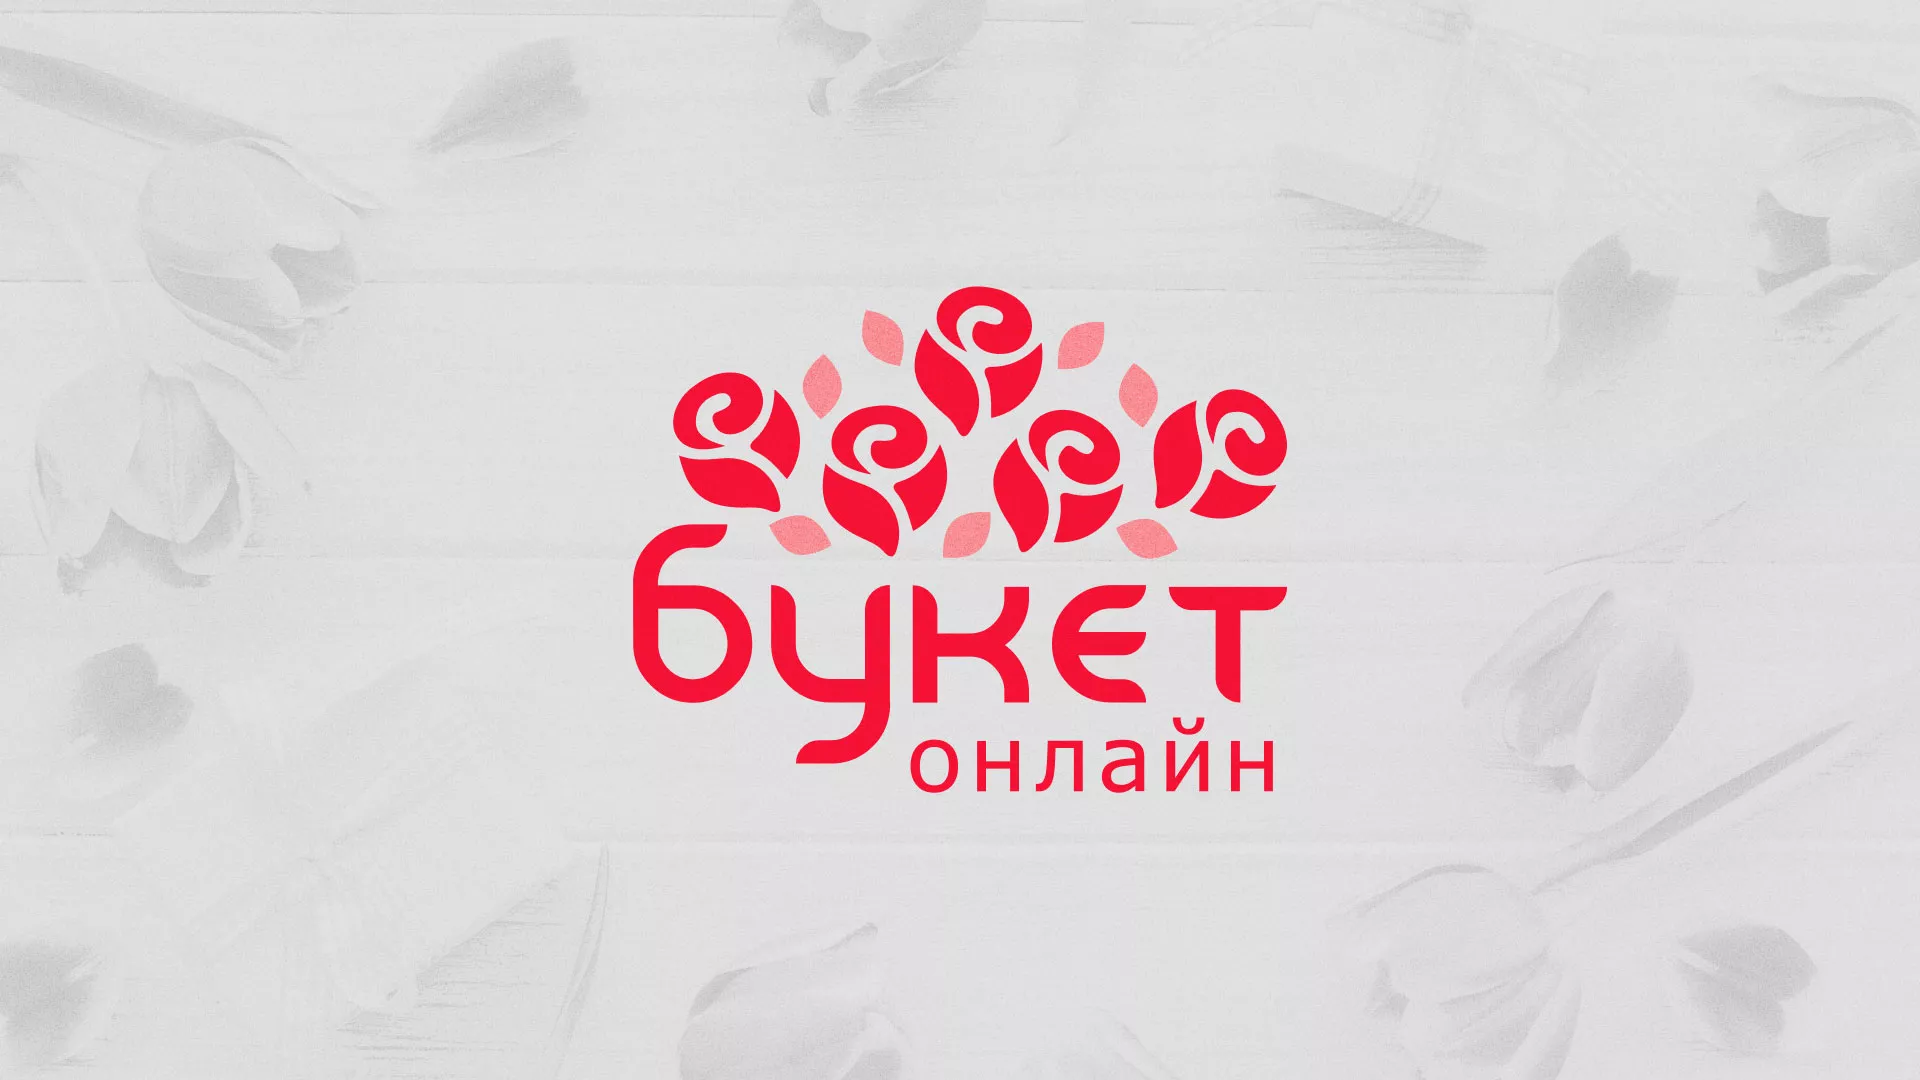 Создание интернет-магазина «Букет-онлайн» по цветам в Белогорске